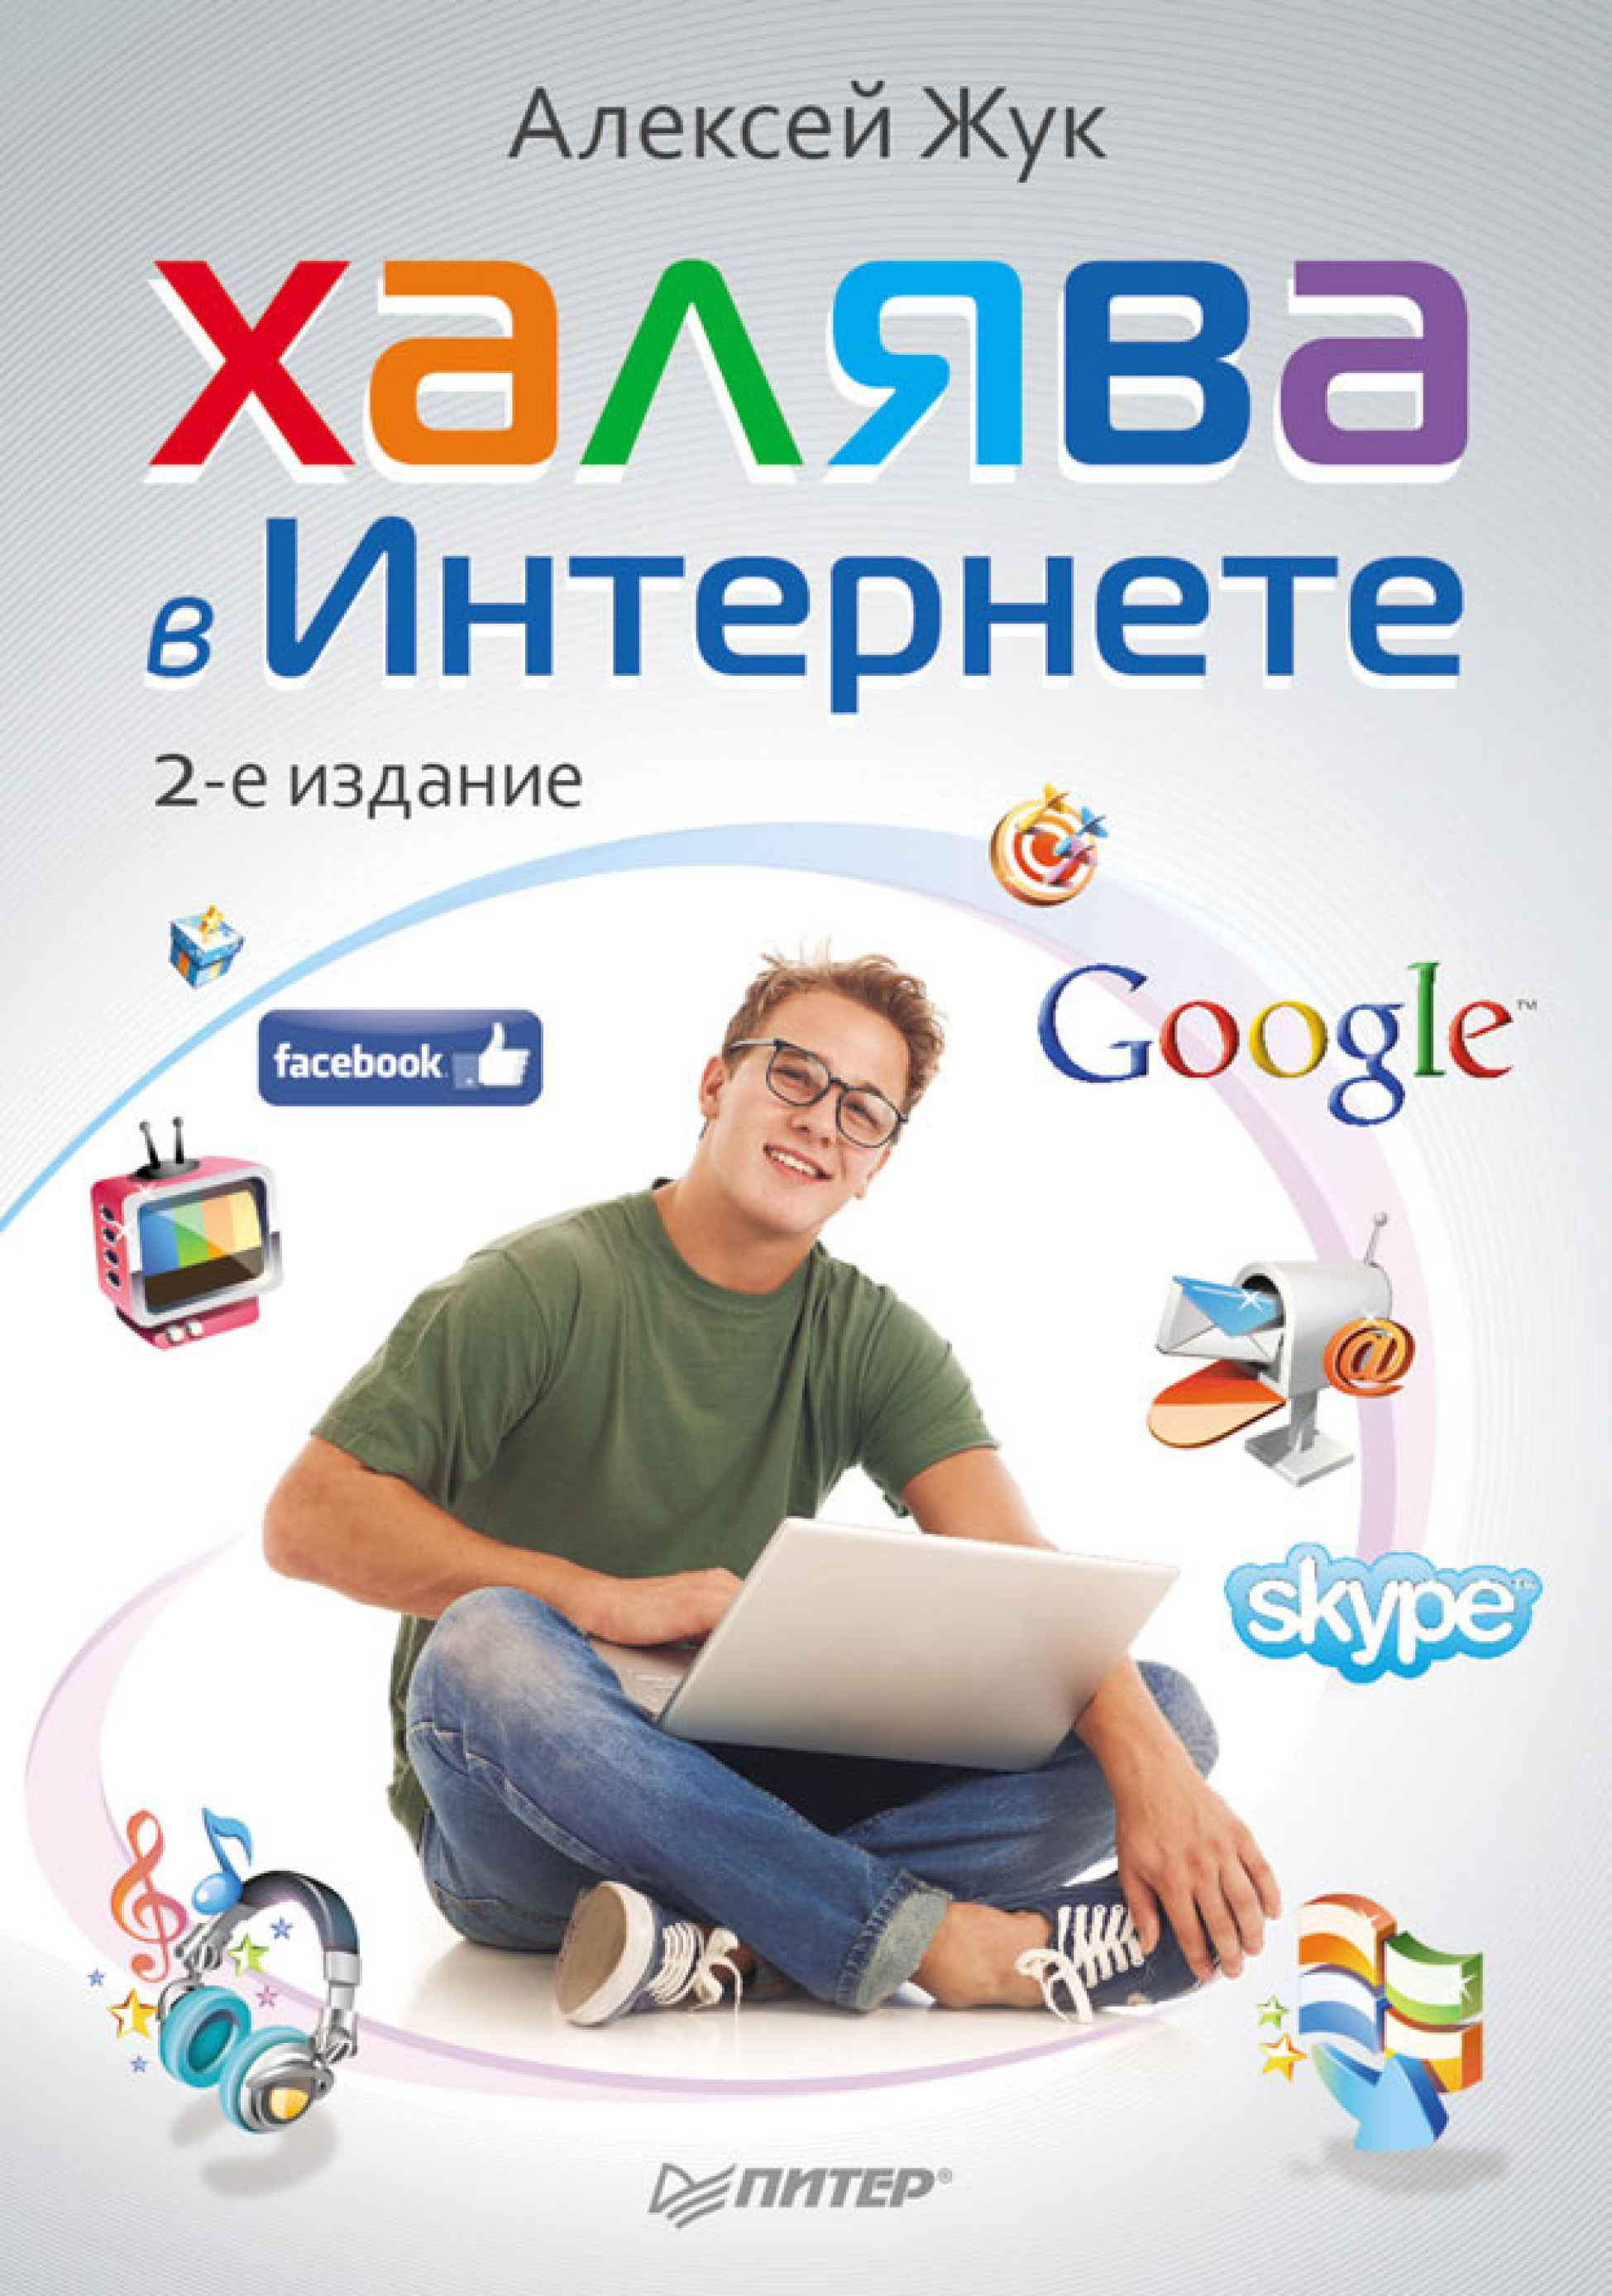 Книга  Халява в Интернете созданная Алексей Жук может относится к жанру интернет, интернет-бизнес, программы. Стоимость электронной книги Халява в Интернете с идентификатором 586725 составляет 179.00 руб.